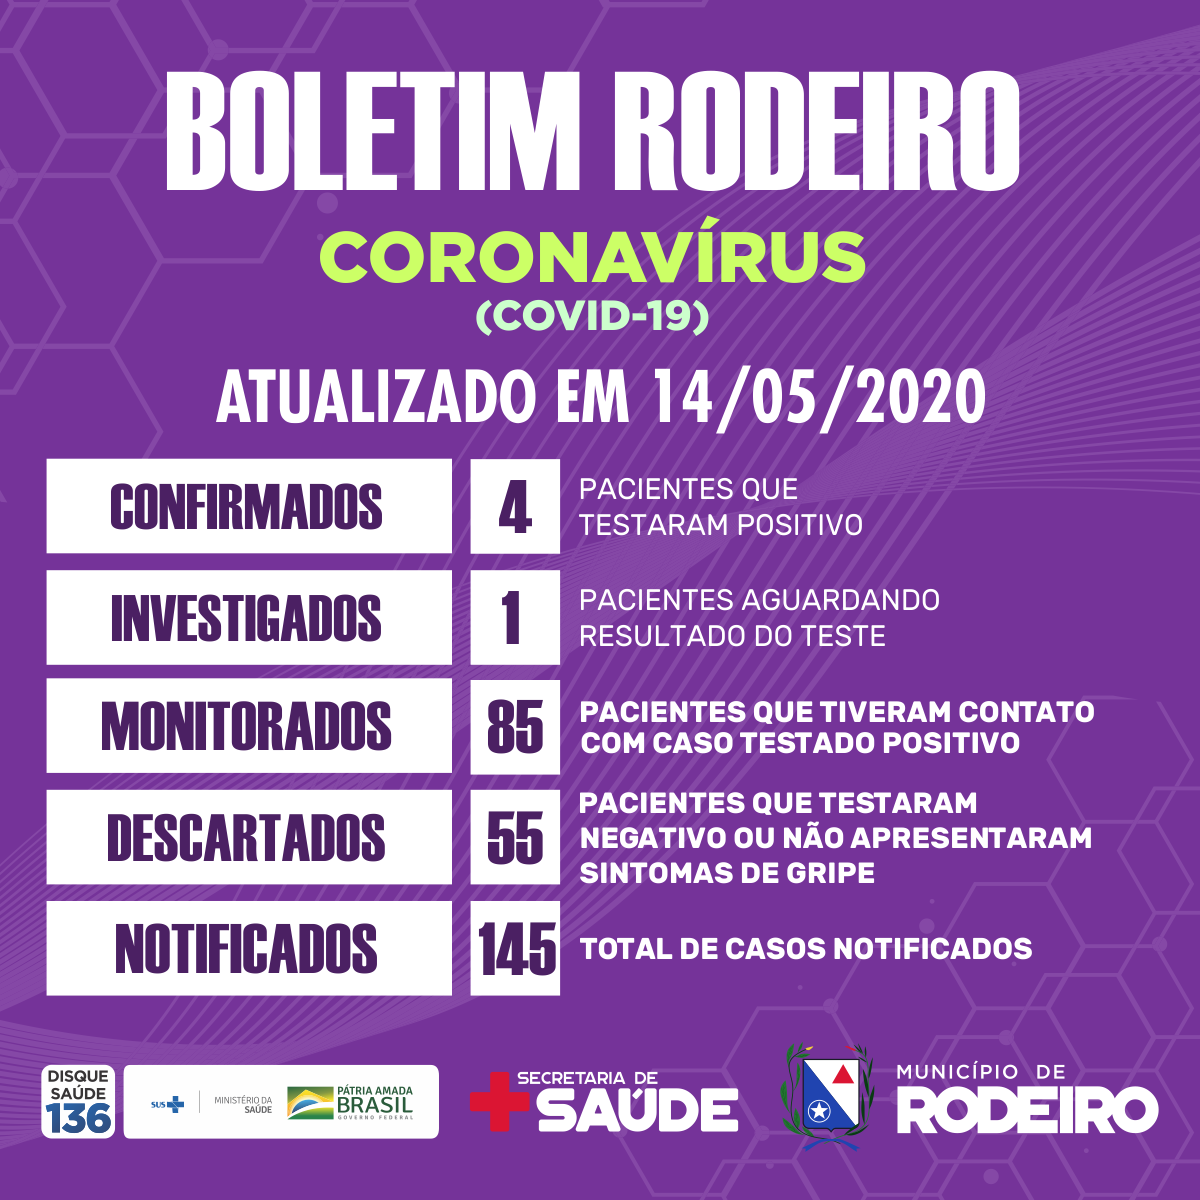 Boletim epidemiológico do Município de Rodeiro, atualização sobre coronavírus em 14/05/2020